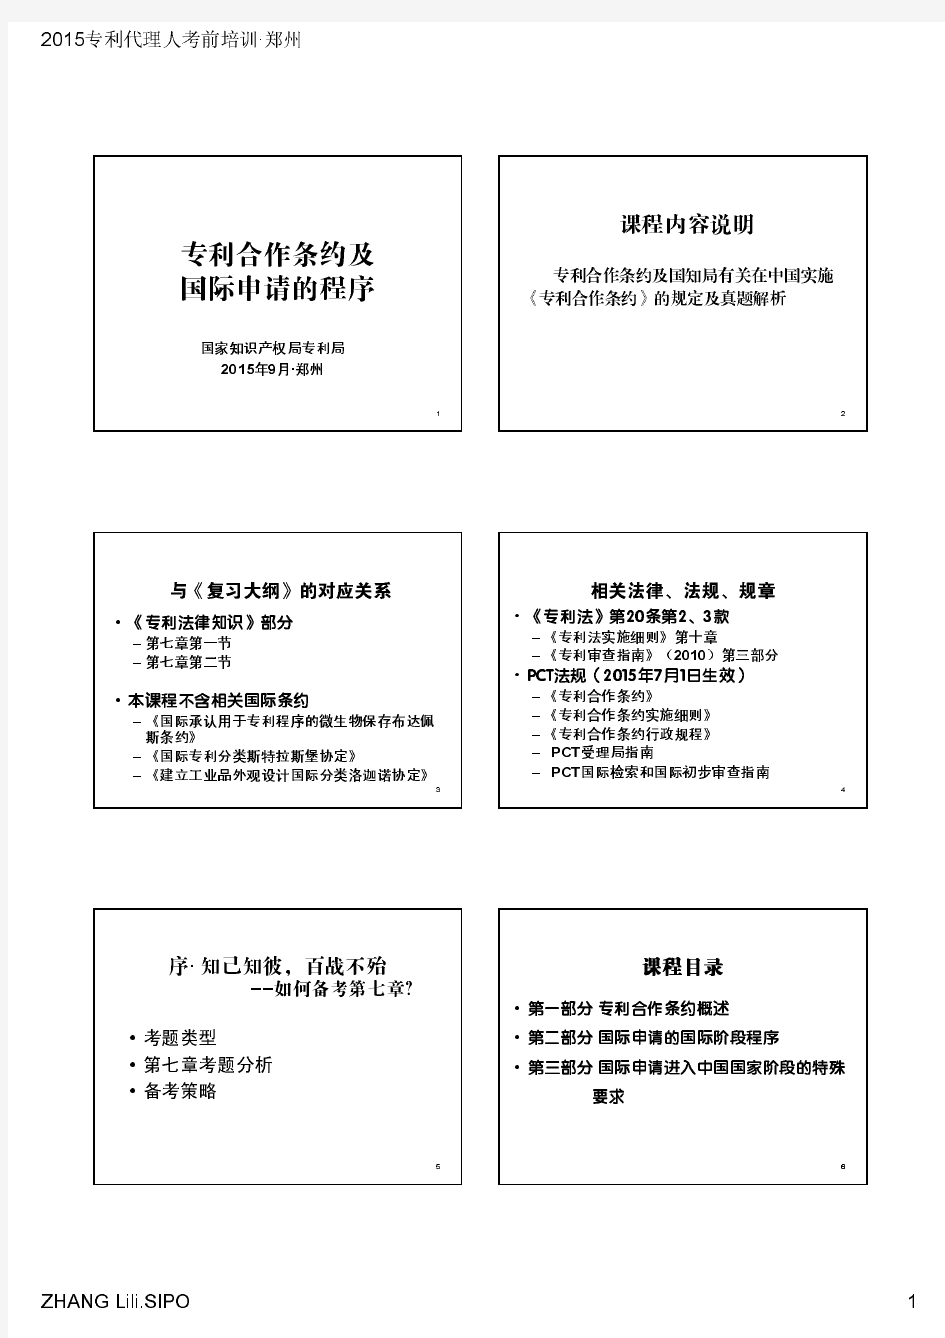 9月11日 张莉丽 2015年专利代理人考前培训讲义(郑州·PCT)